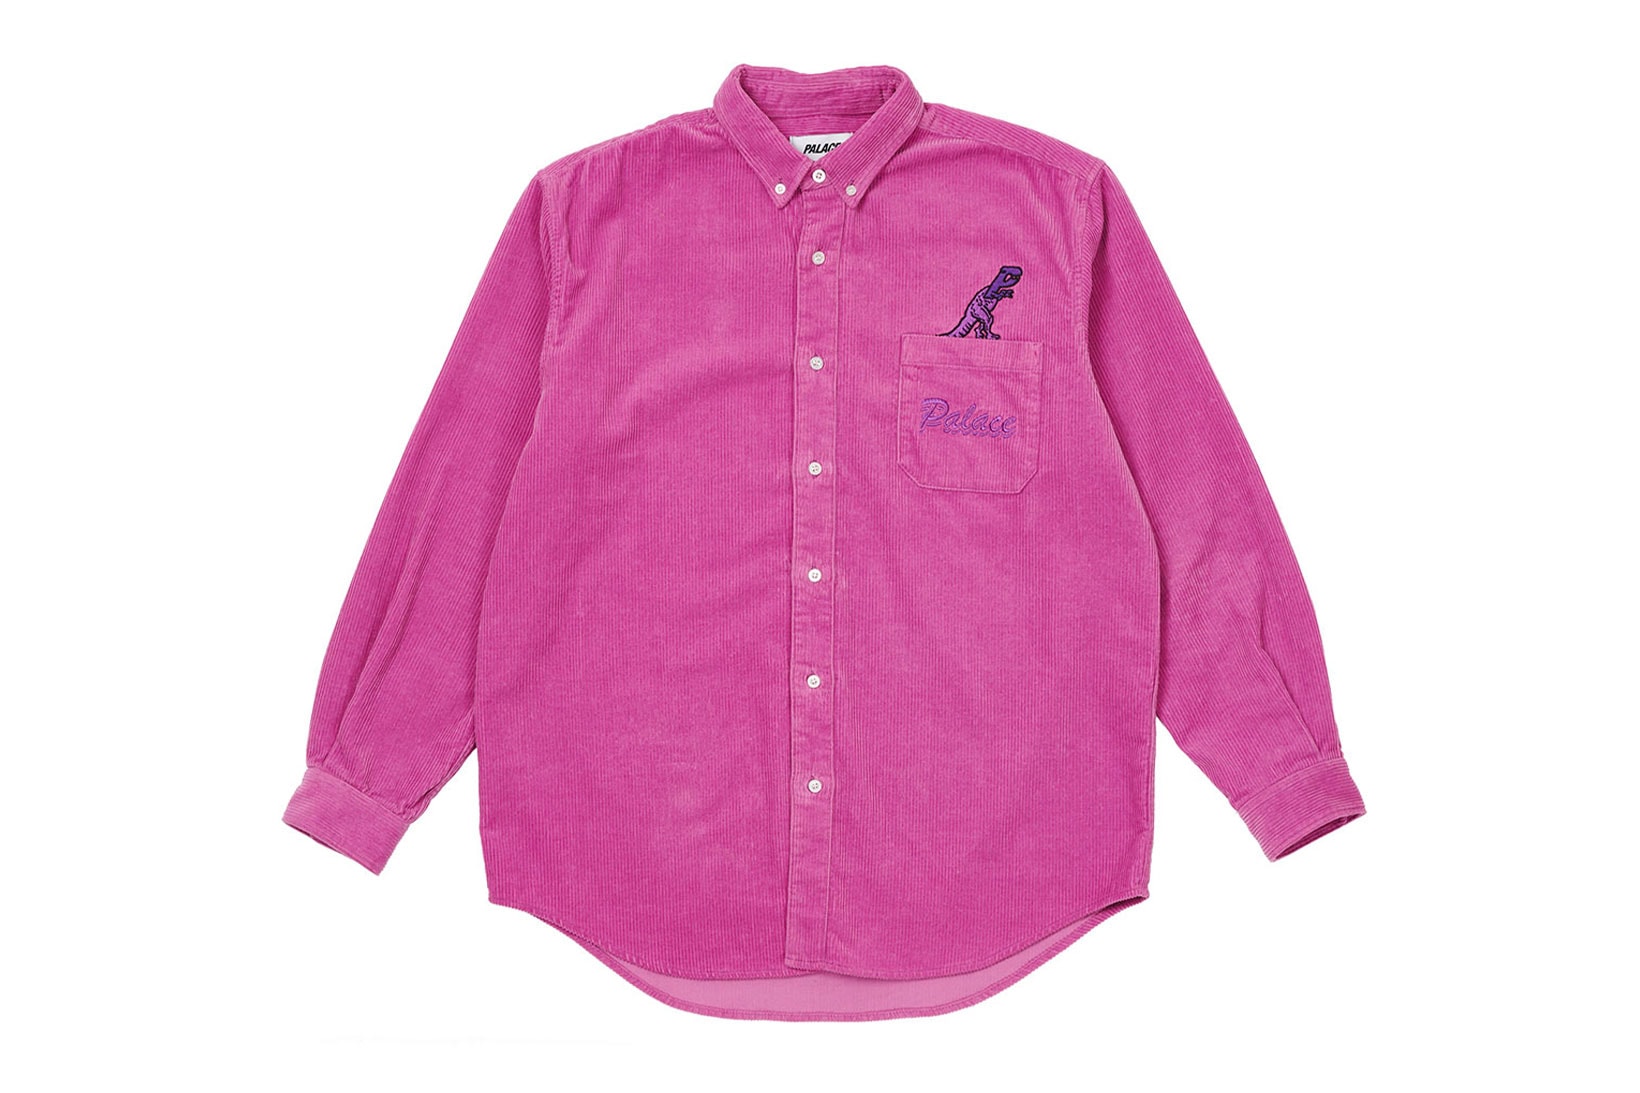 palace spring drop 4 collection logo shirt pink